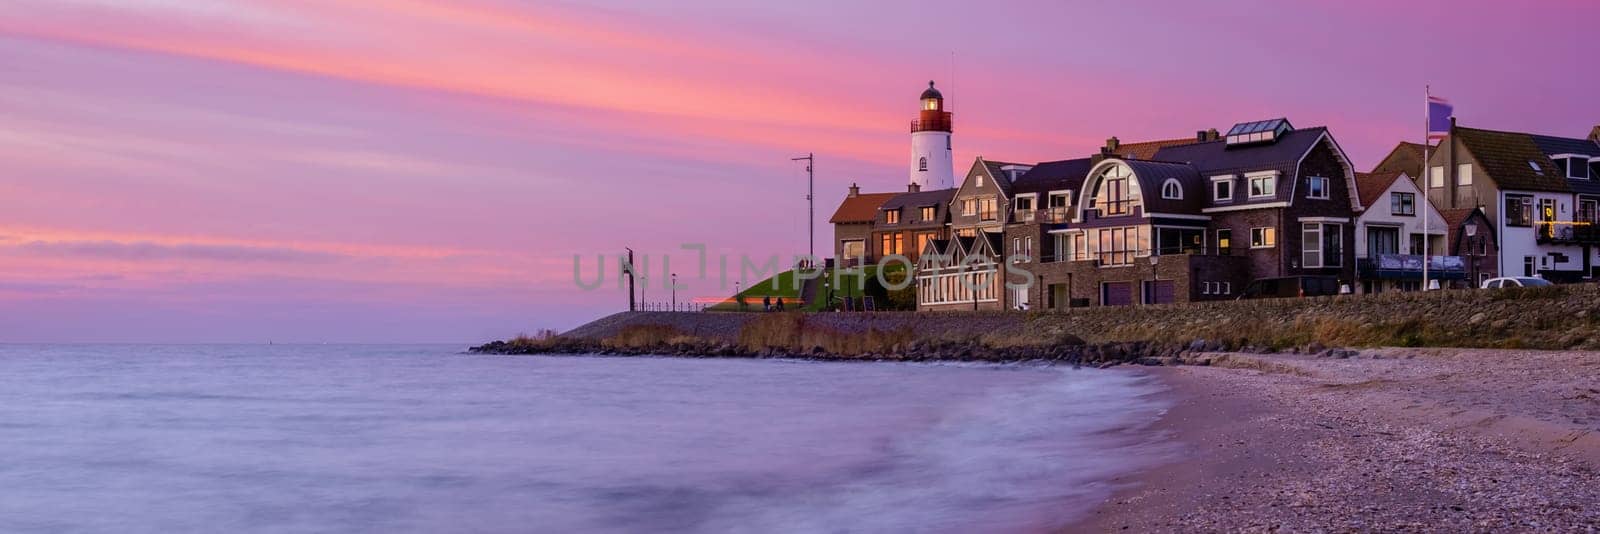 Lighthhouse of Urk Netherlands during sunset in the Netherlands by fokkebok